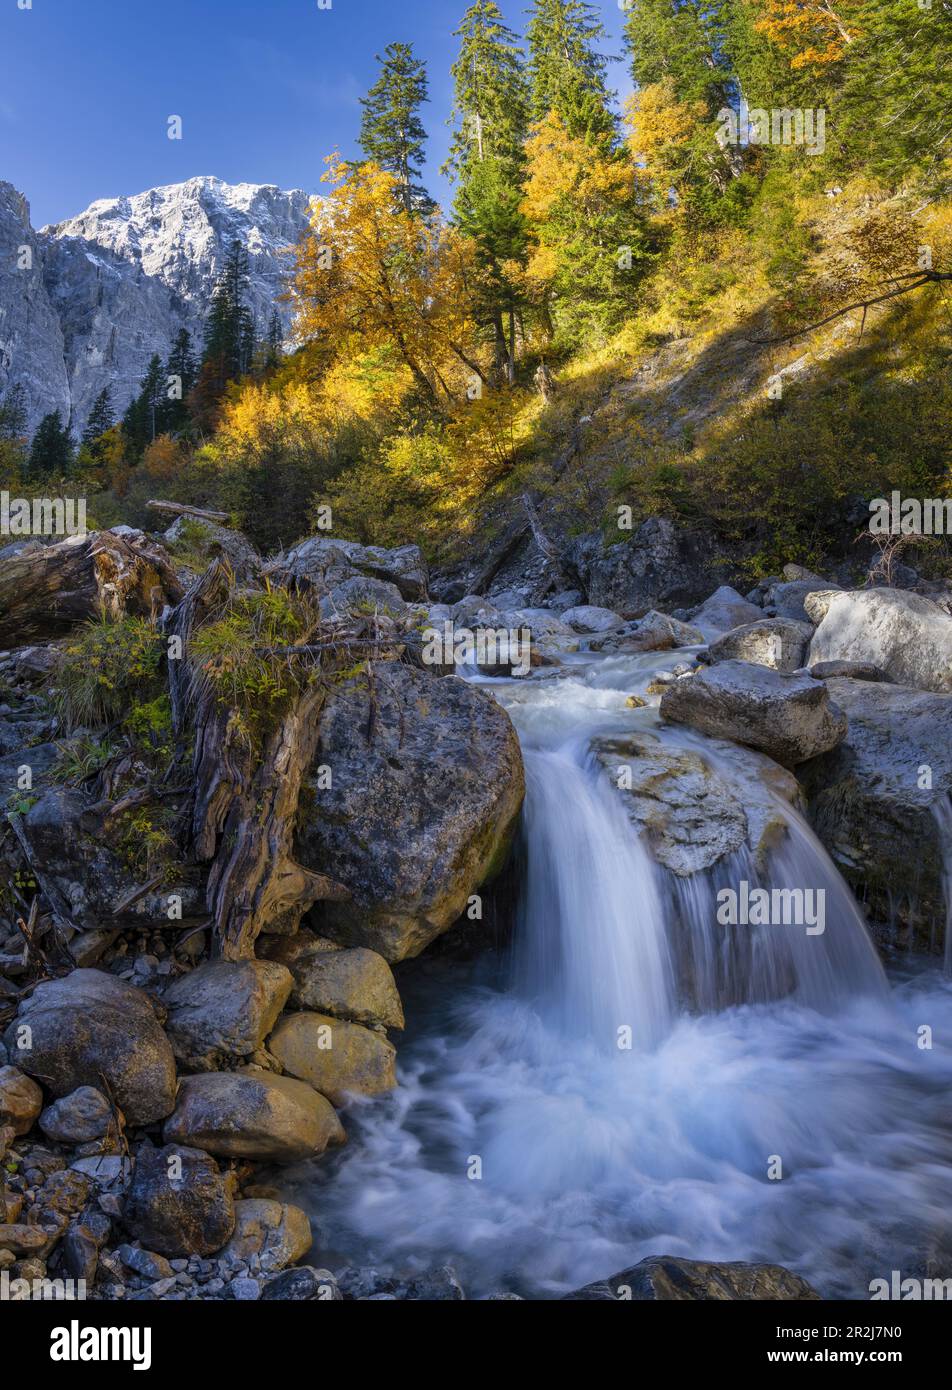 Kleiner Wasserfall auf dem Weg nach eng Grund, eng, Hinterriss, Karwendel, Tirol, Österreich Stockfoto